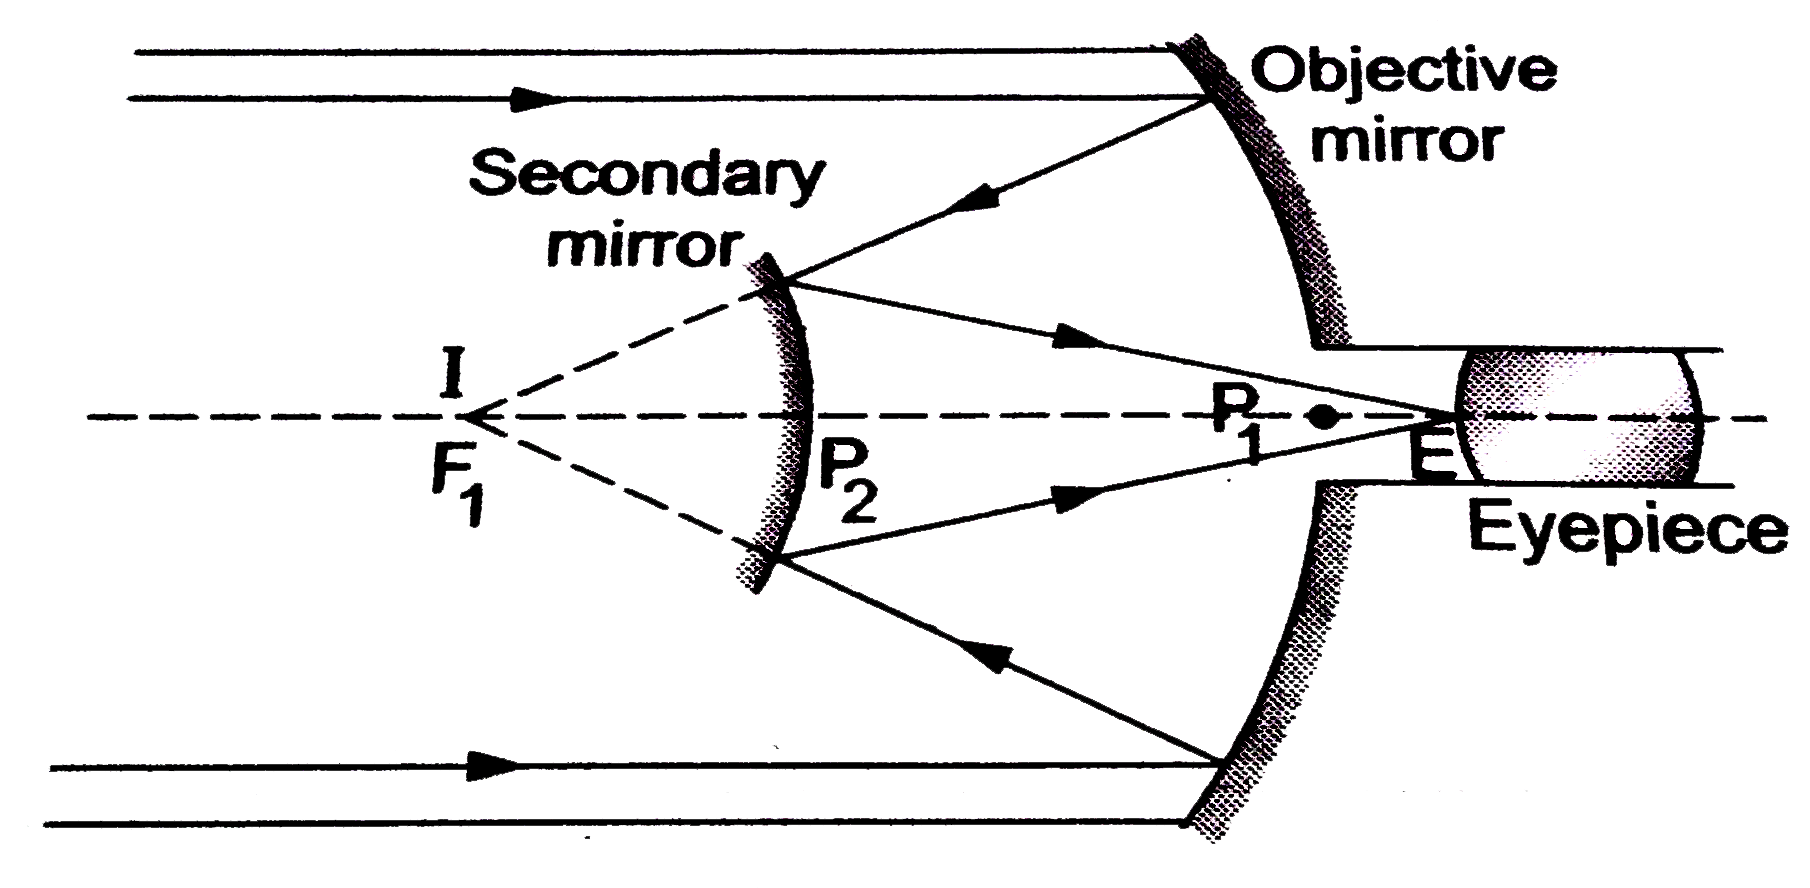 किसी  कैसेग्रेन  दूरबीन  में  चित्र  में  दर्शाए अनुसार  दो  दर्पणों  का  प्रयोग  किया  गया  है । इस  दूरबीन  में  दोनों  दर्पण  एक -दूसरे से 7cm  दूर  रखे  गए  हैं। यदि  बड़े  दर्पण  की  वक्रता -त्रिज्या 22cm   तथा  छोटे  दर्पण  की  वक्रता -त्रिज्या  14cm   हो ,तो  अन्नत  पर  रखे  किसी  बिंब  का अंतिम  प्रतिबिंब  कहाँ  बनेगा ?